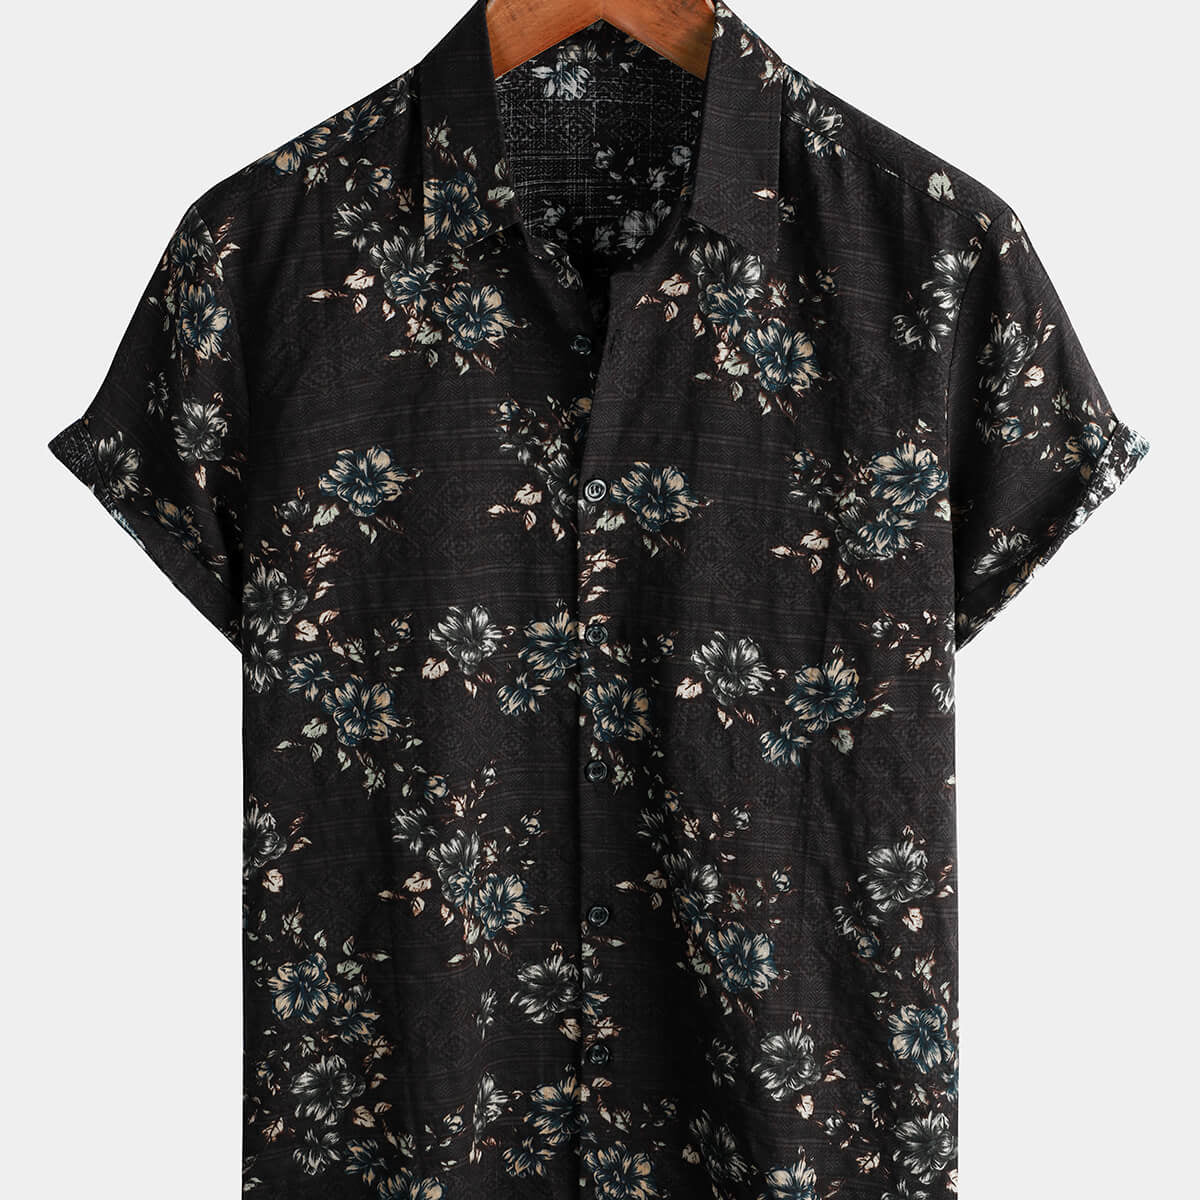 Camisa navideña hawaiana negra con botones y manga corta de algodón floral para hombre